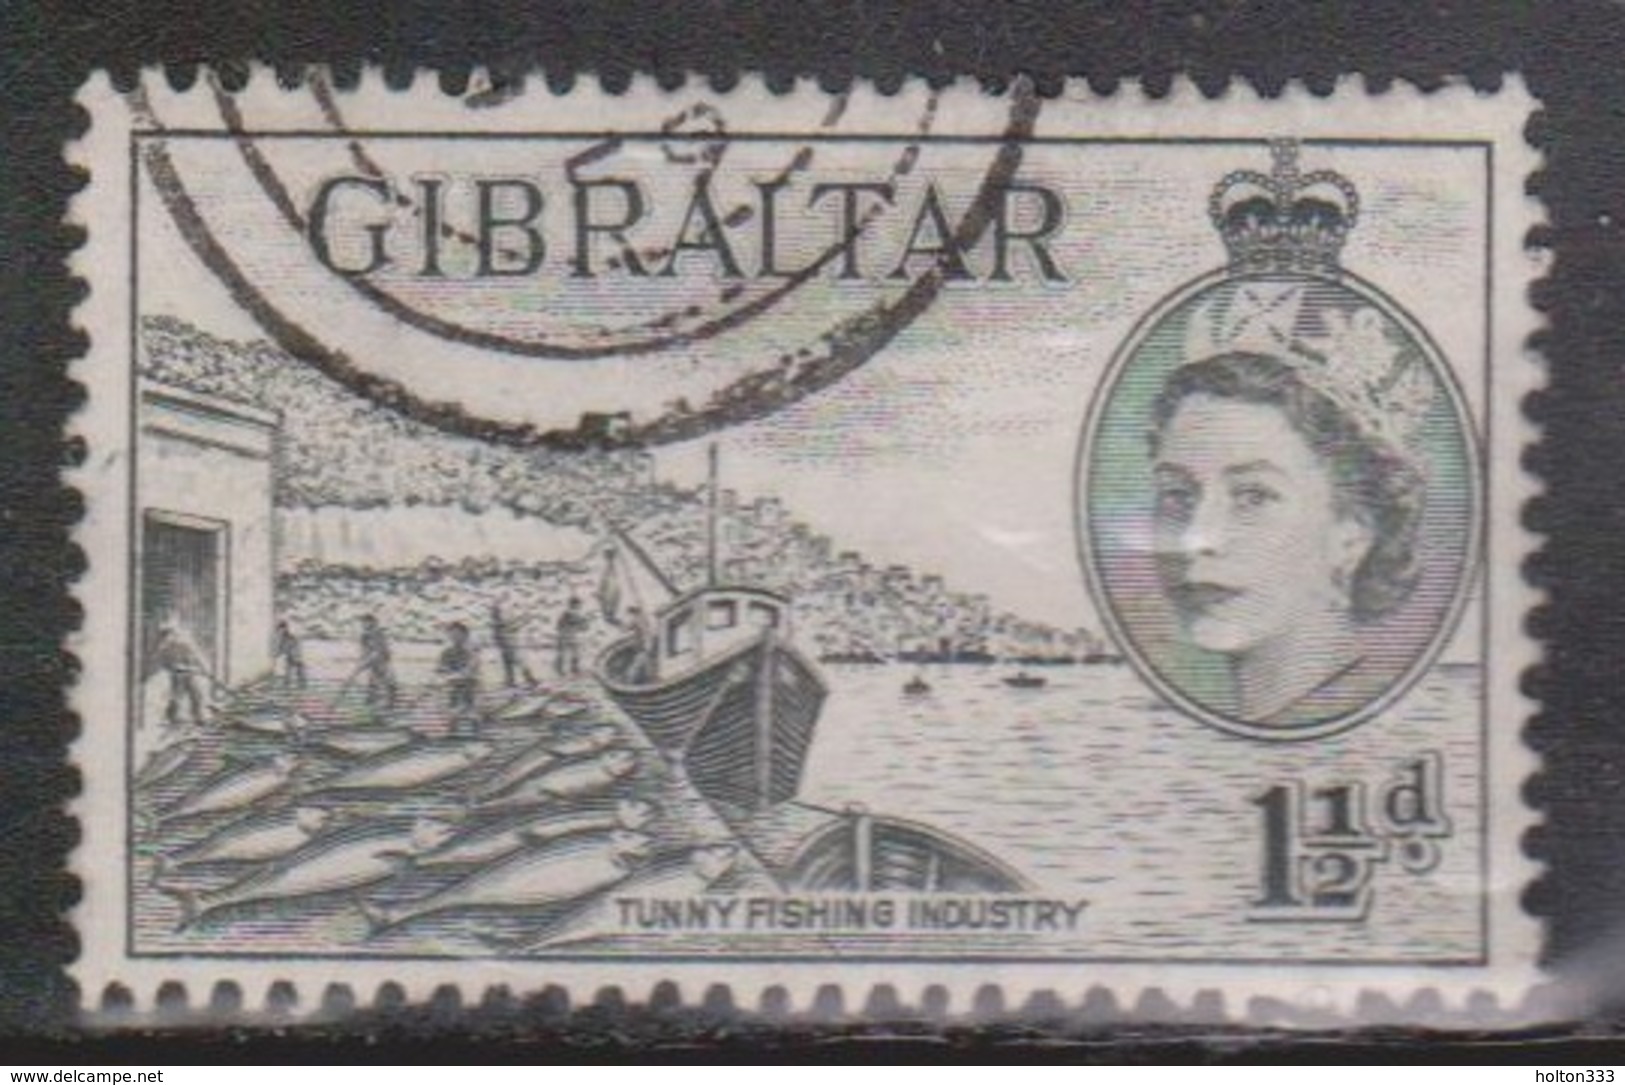 GIBRALTAR Scott # 134 Used - QEII & Fishing Industry - Gibraltar